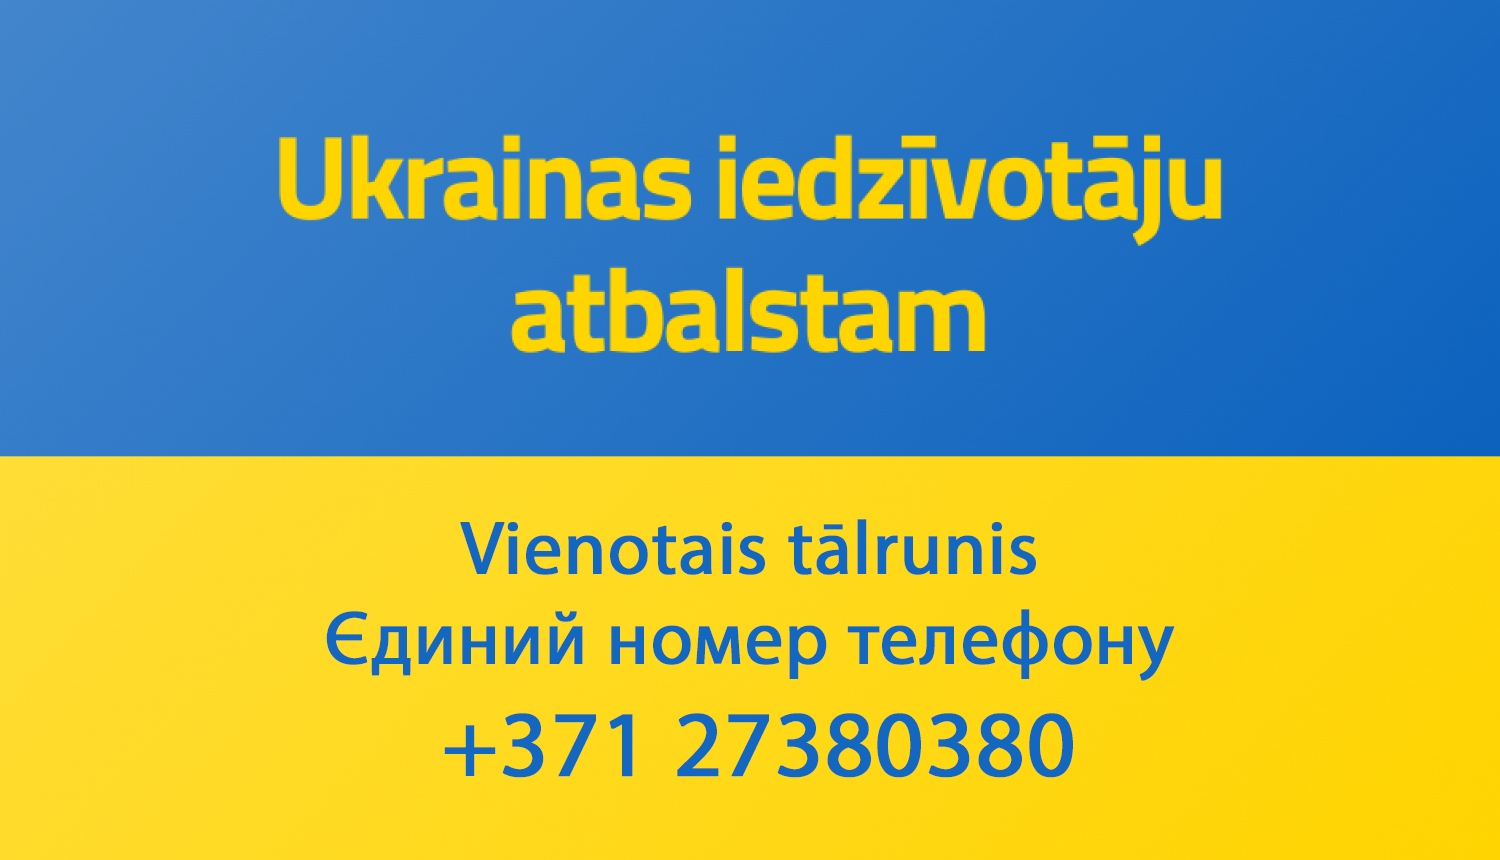 Ukrainas iedzīvotāju atbalstam